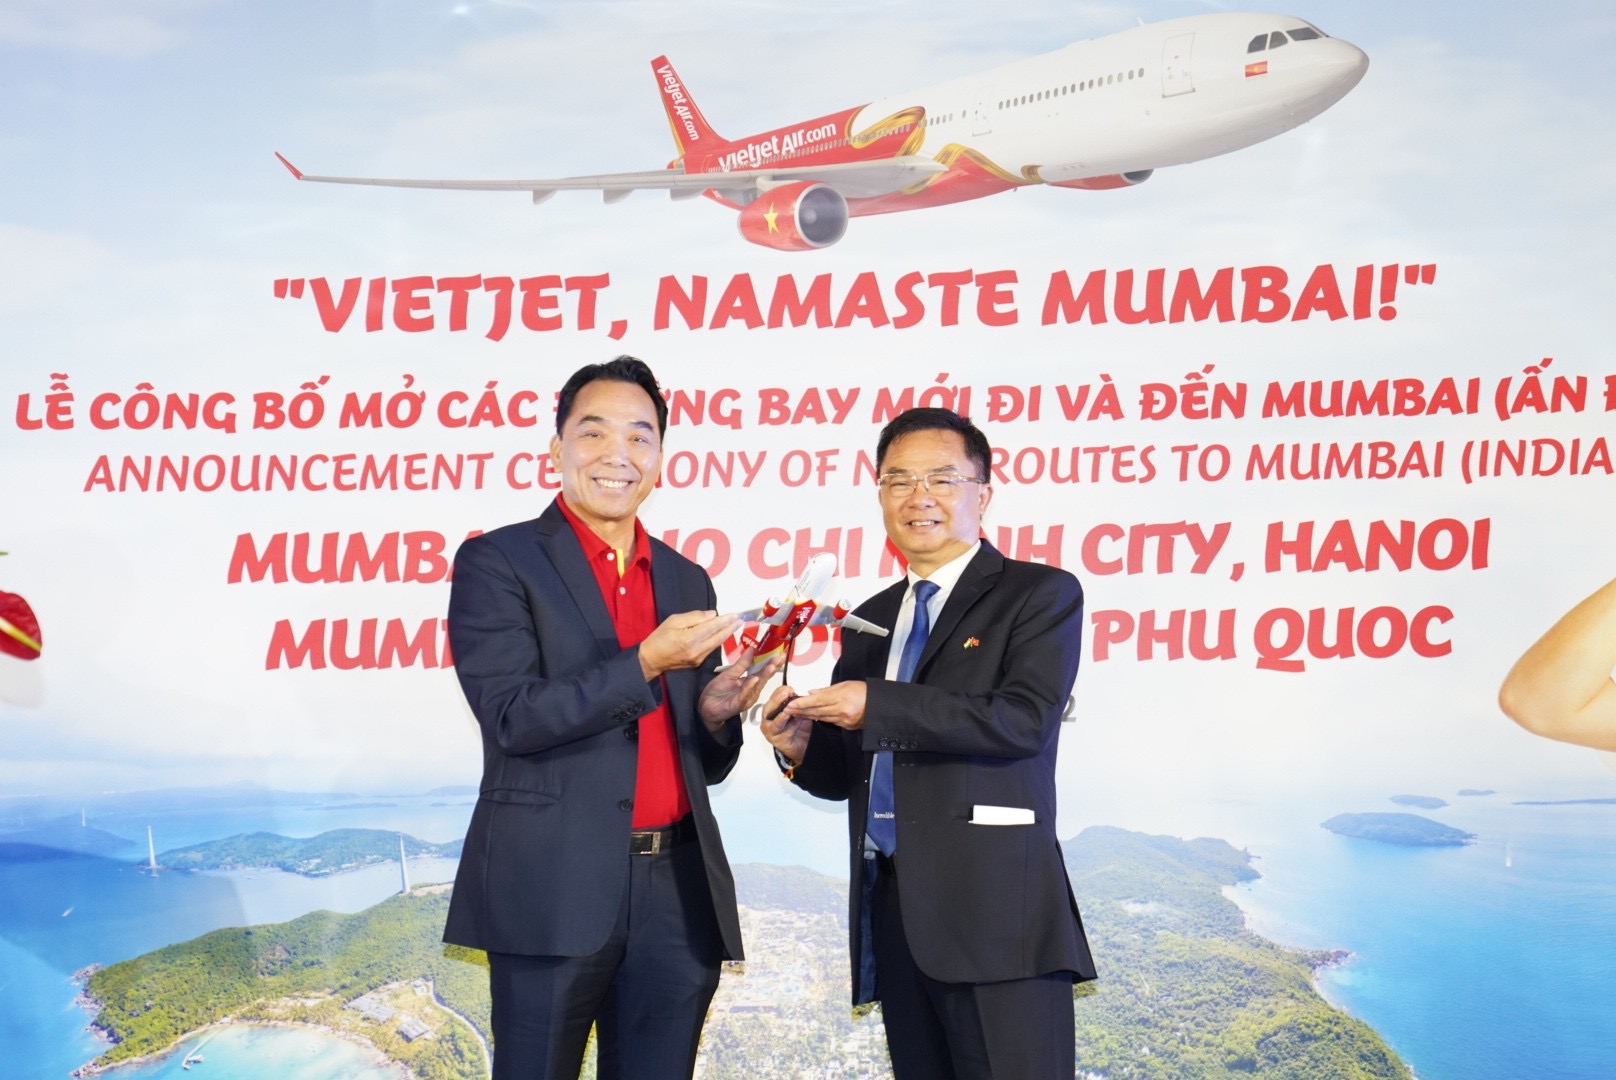 Ông Nguyễn Anh Tuấn - Thành viên Hội đồng quản trị Vietjet tặng quà lưu niệm cho ông Hoàng Tùng - Tổng lãnh sự Việt Nam tại Mumbai 